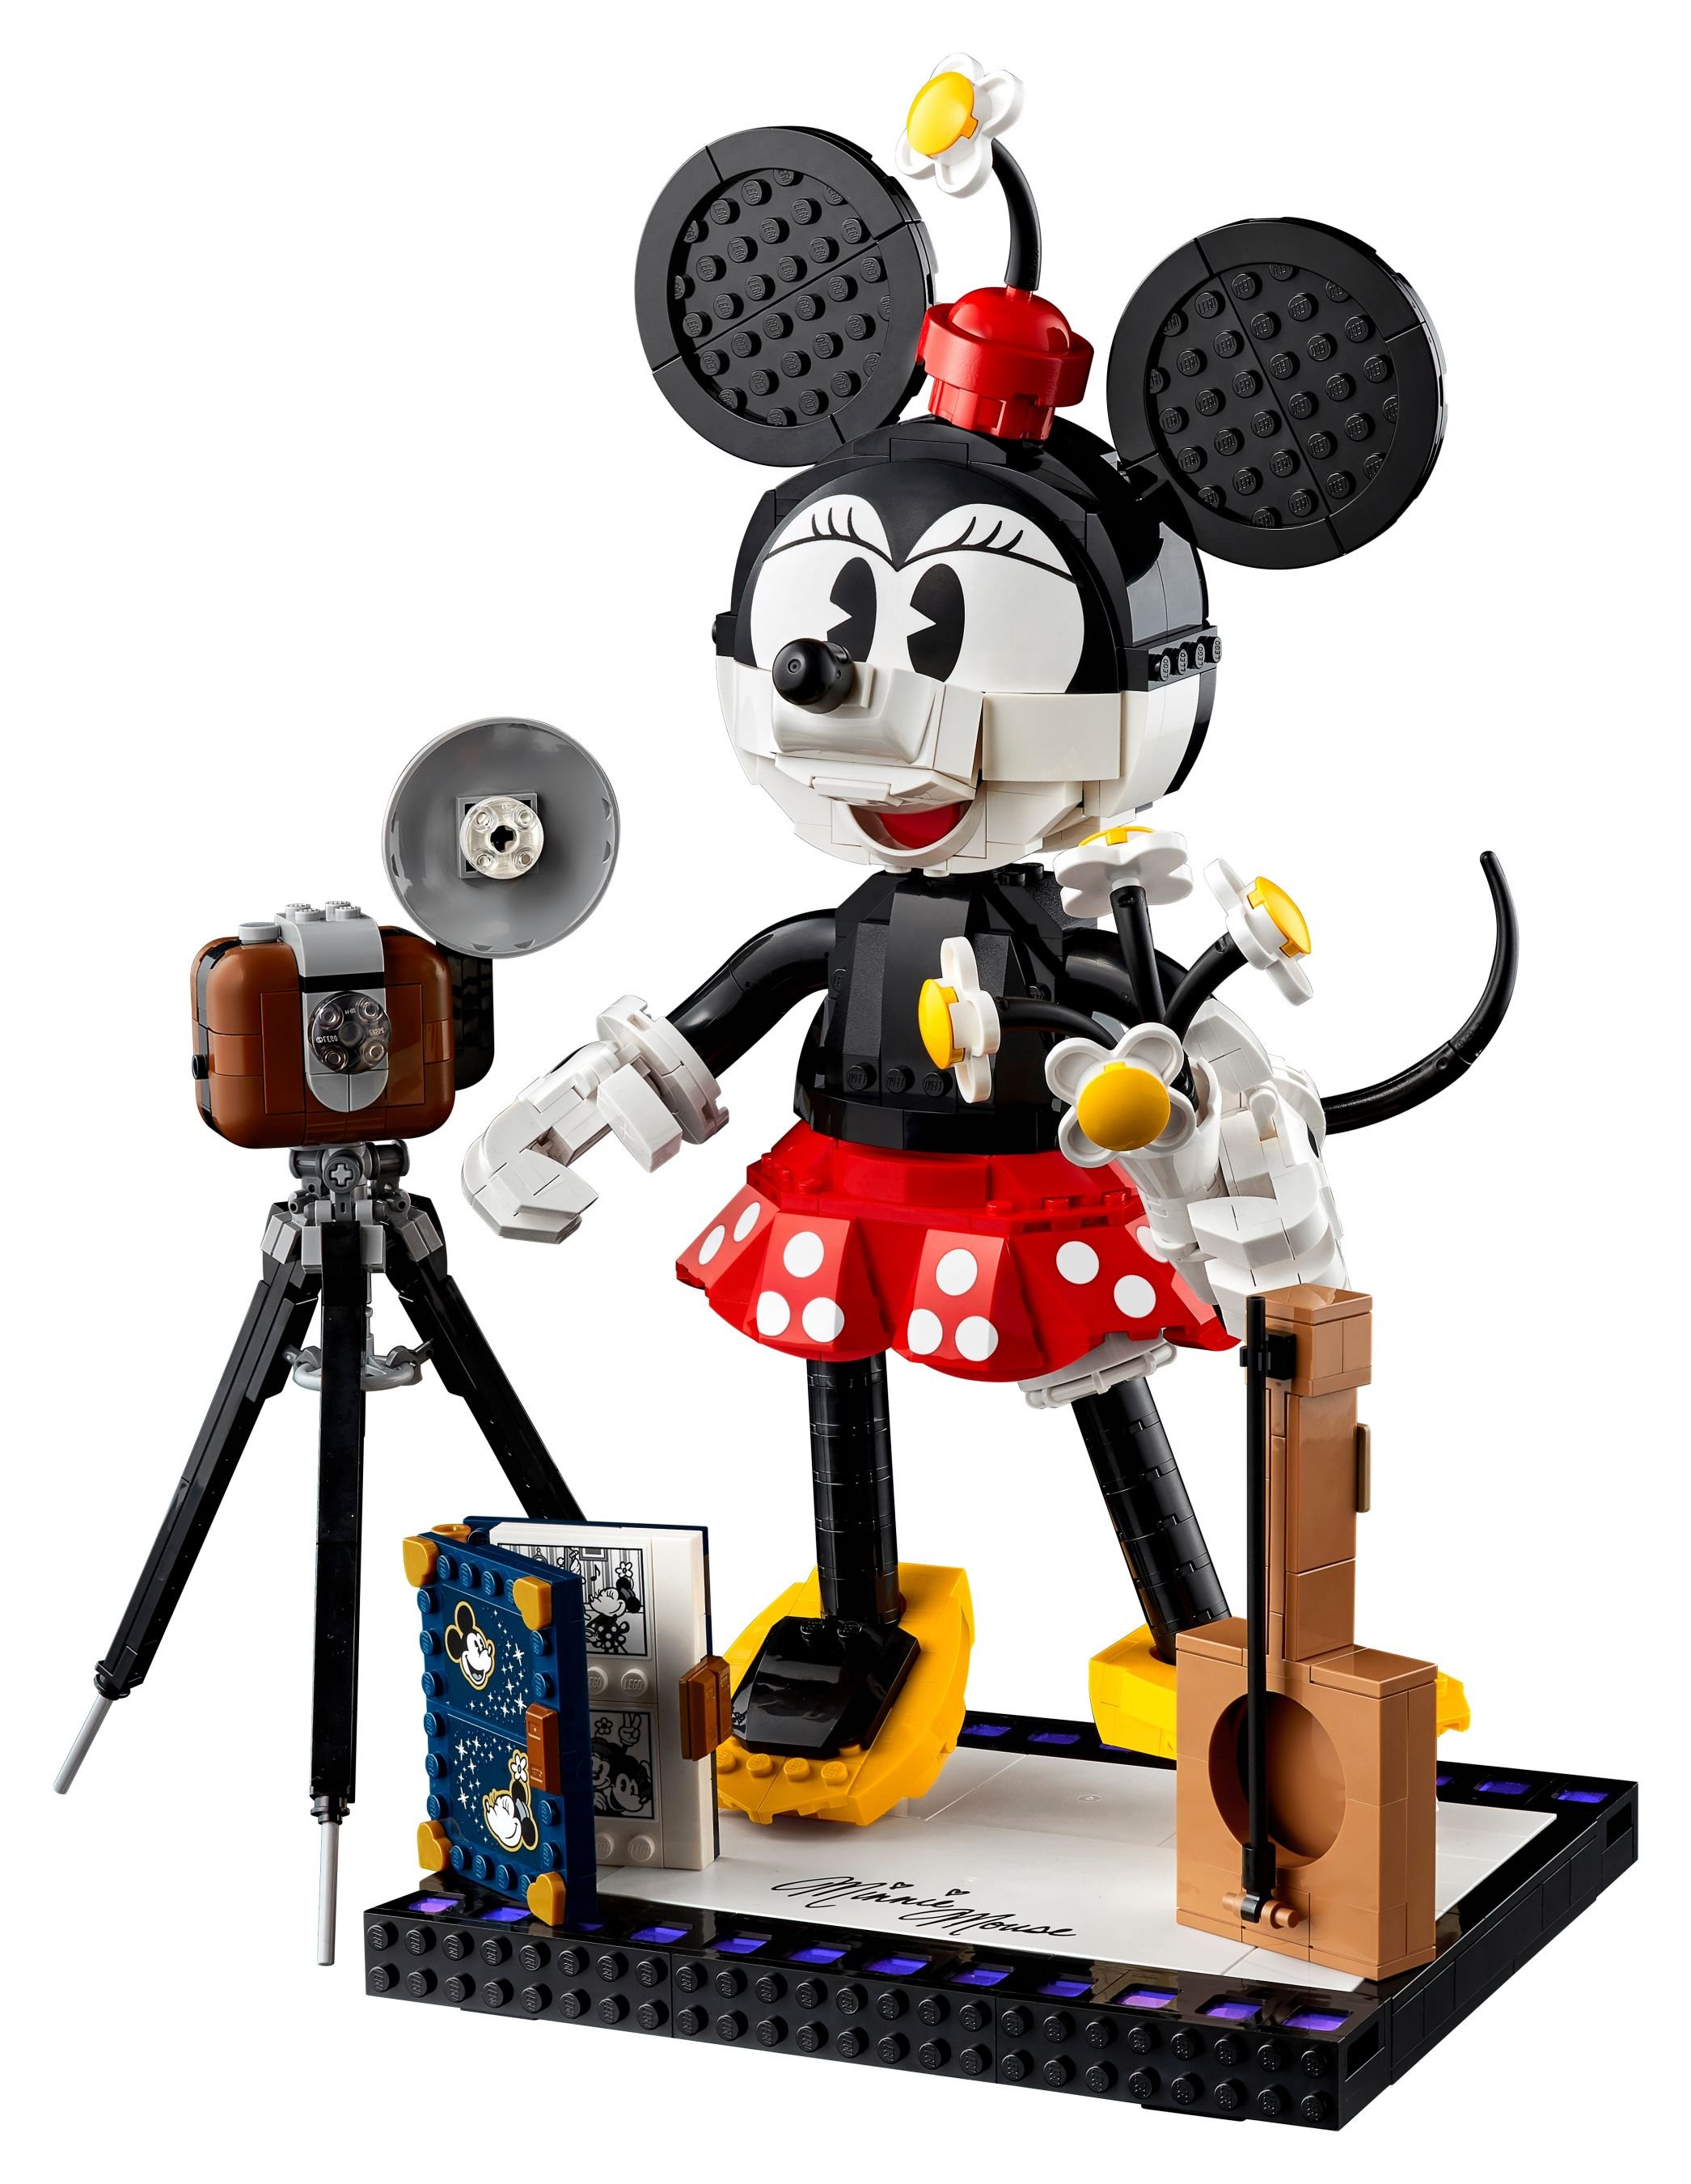 LEGO Disney 43179 Micky Maus und Minnie Maus LEGO_43179_alt8.jpg